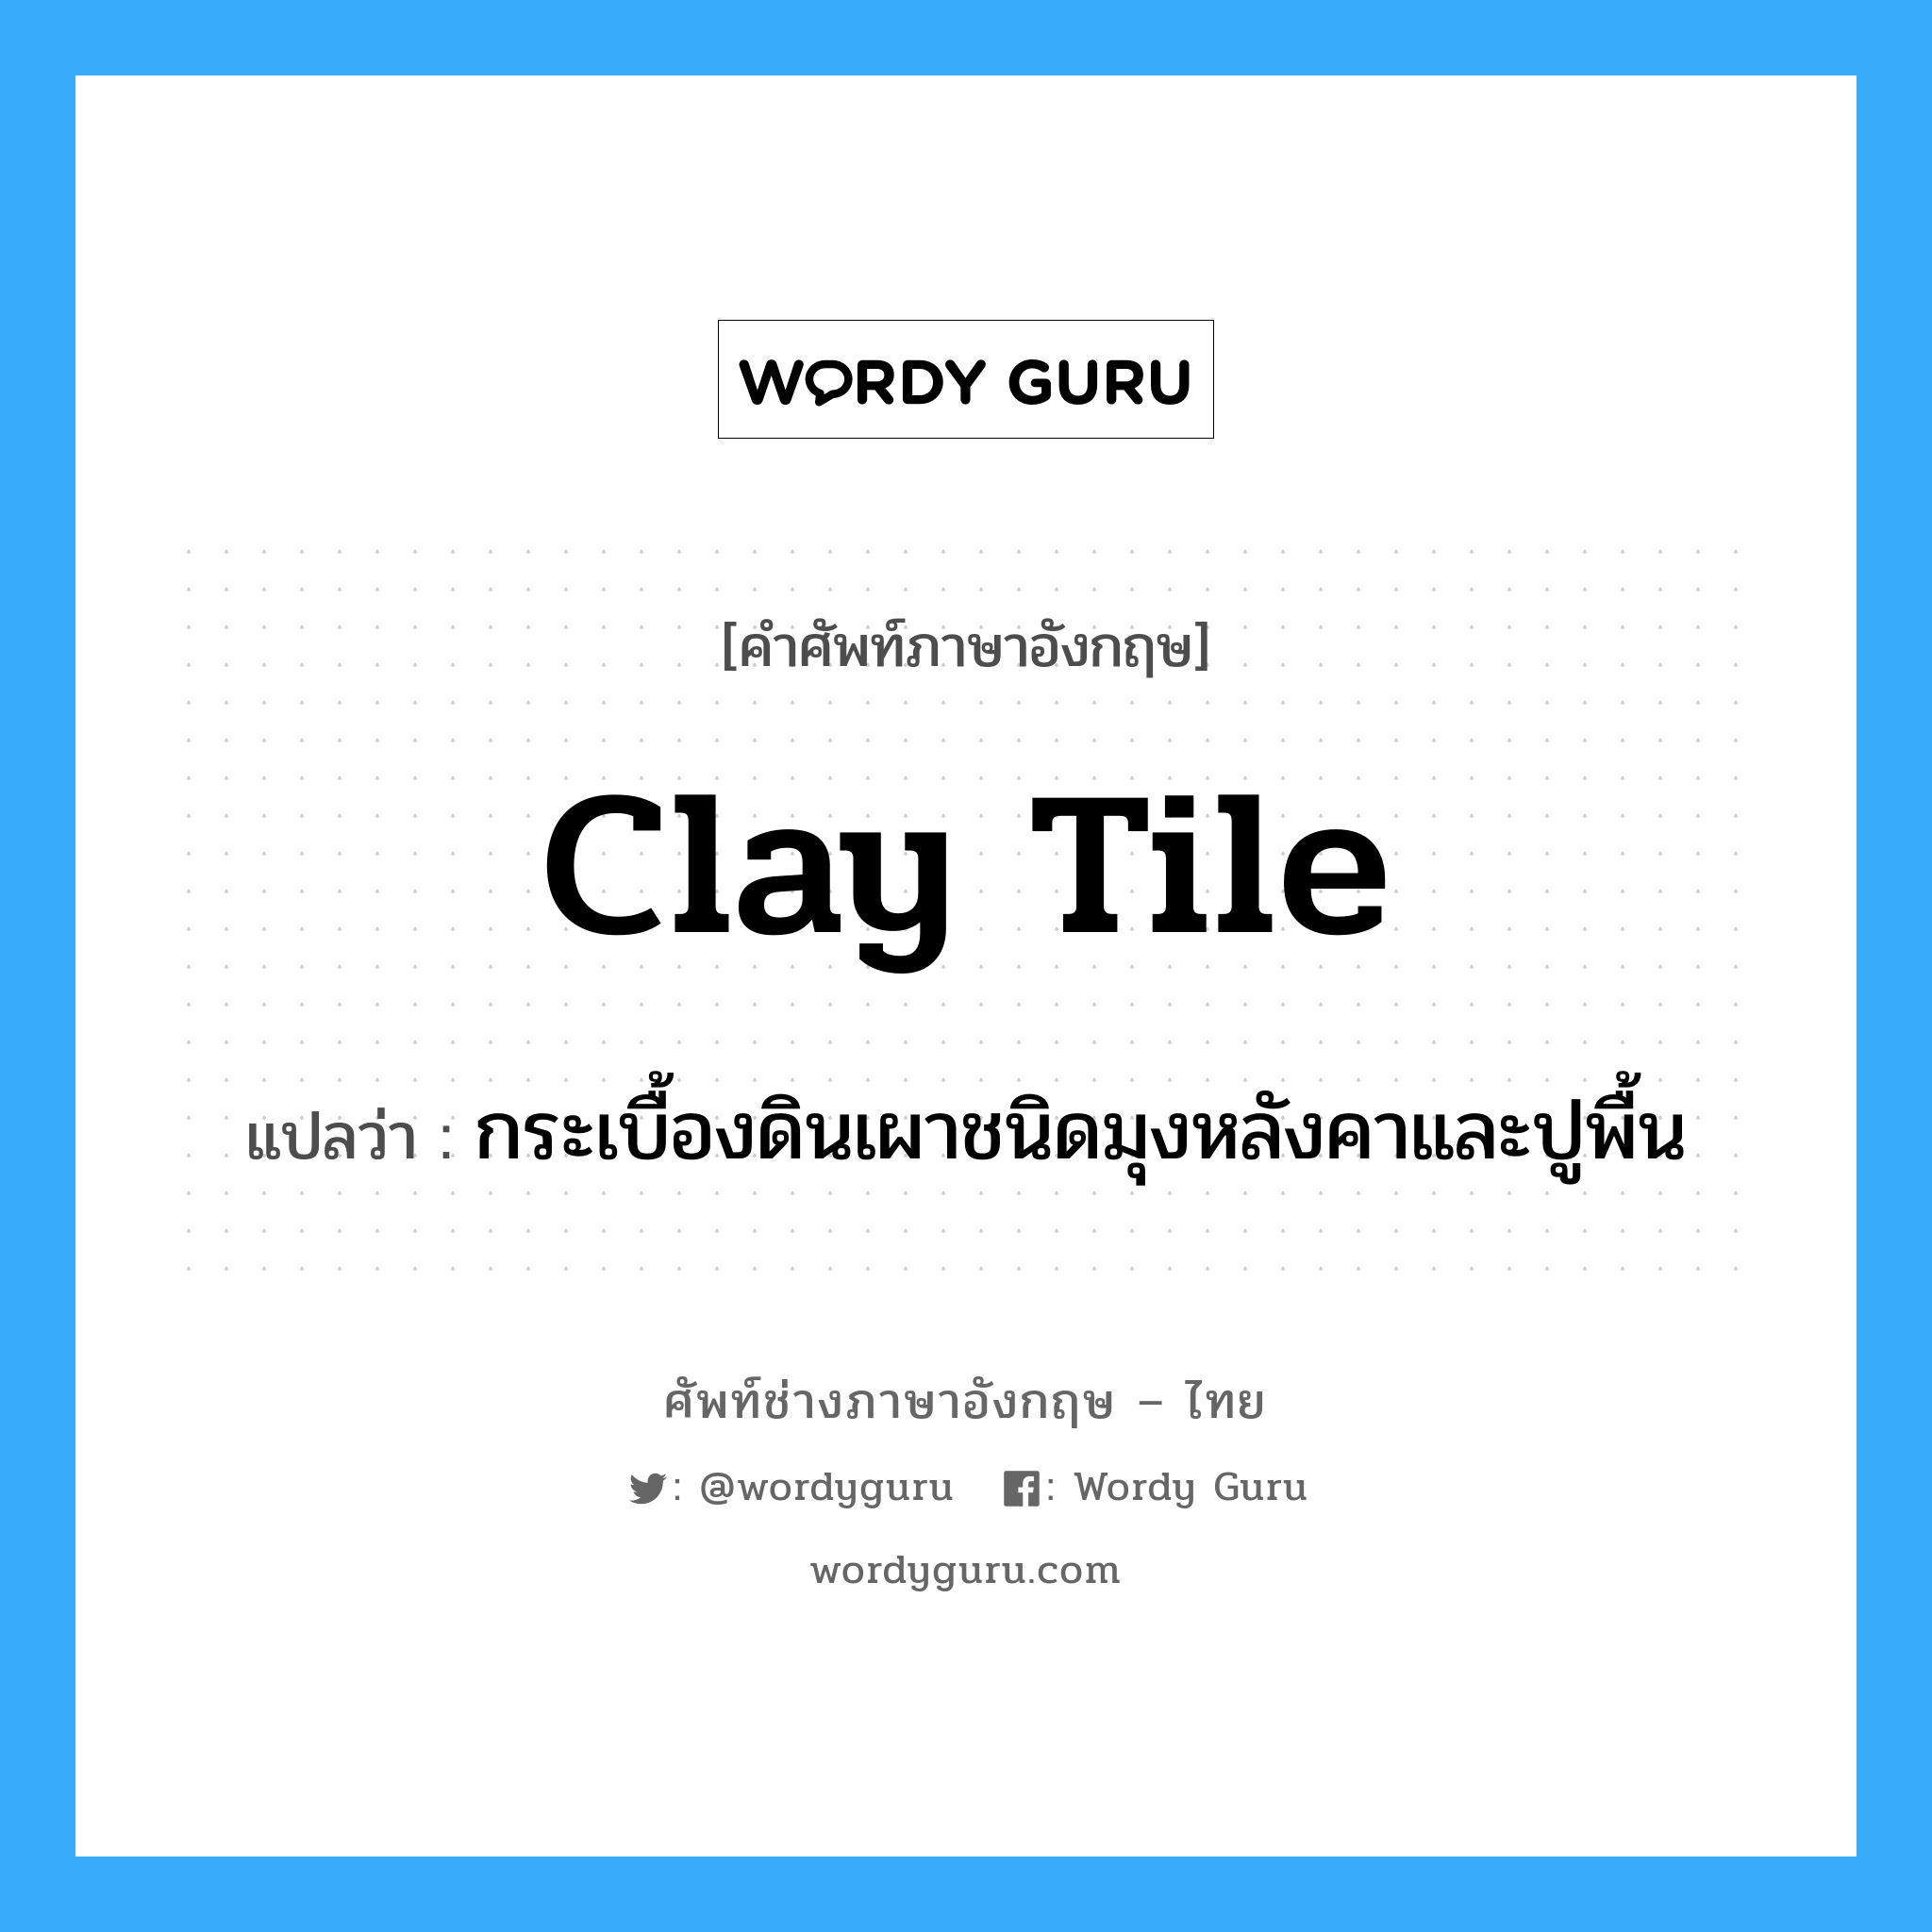 clay tile แปลว่า?, คำศัพท์ช่างภาษาอังกฤษ - ไทย clay tile คำศัพท์ภาษาอังกฤษ clay tile แปลว่า กระเบื้องดินเผาชนิดมุงหลังคาและปูพื้น